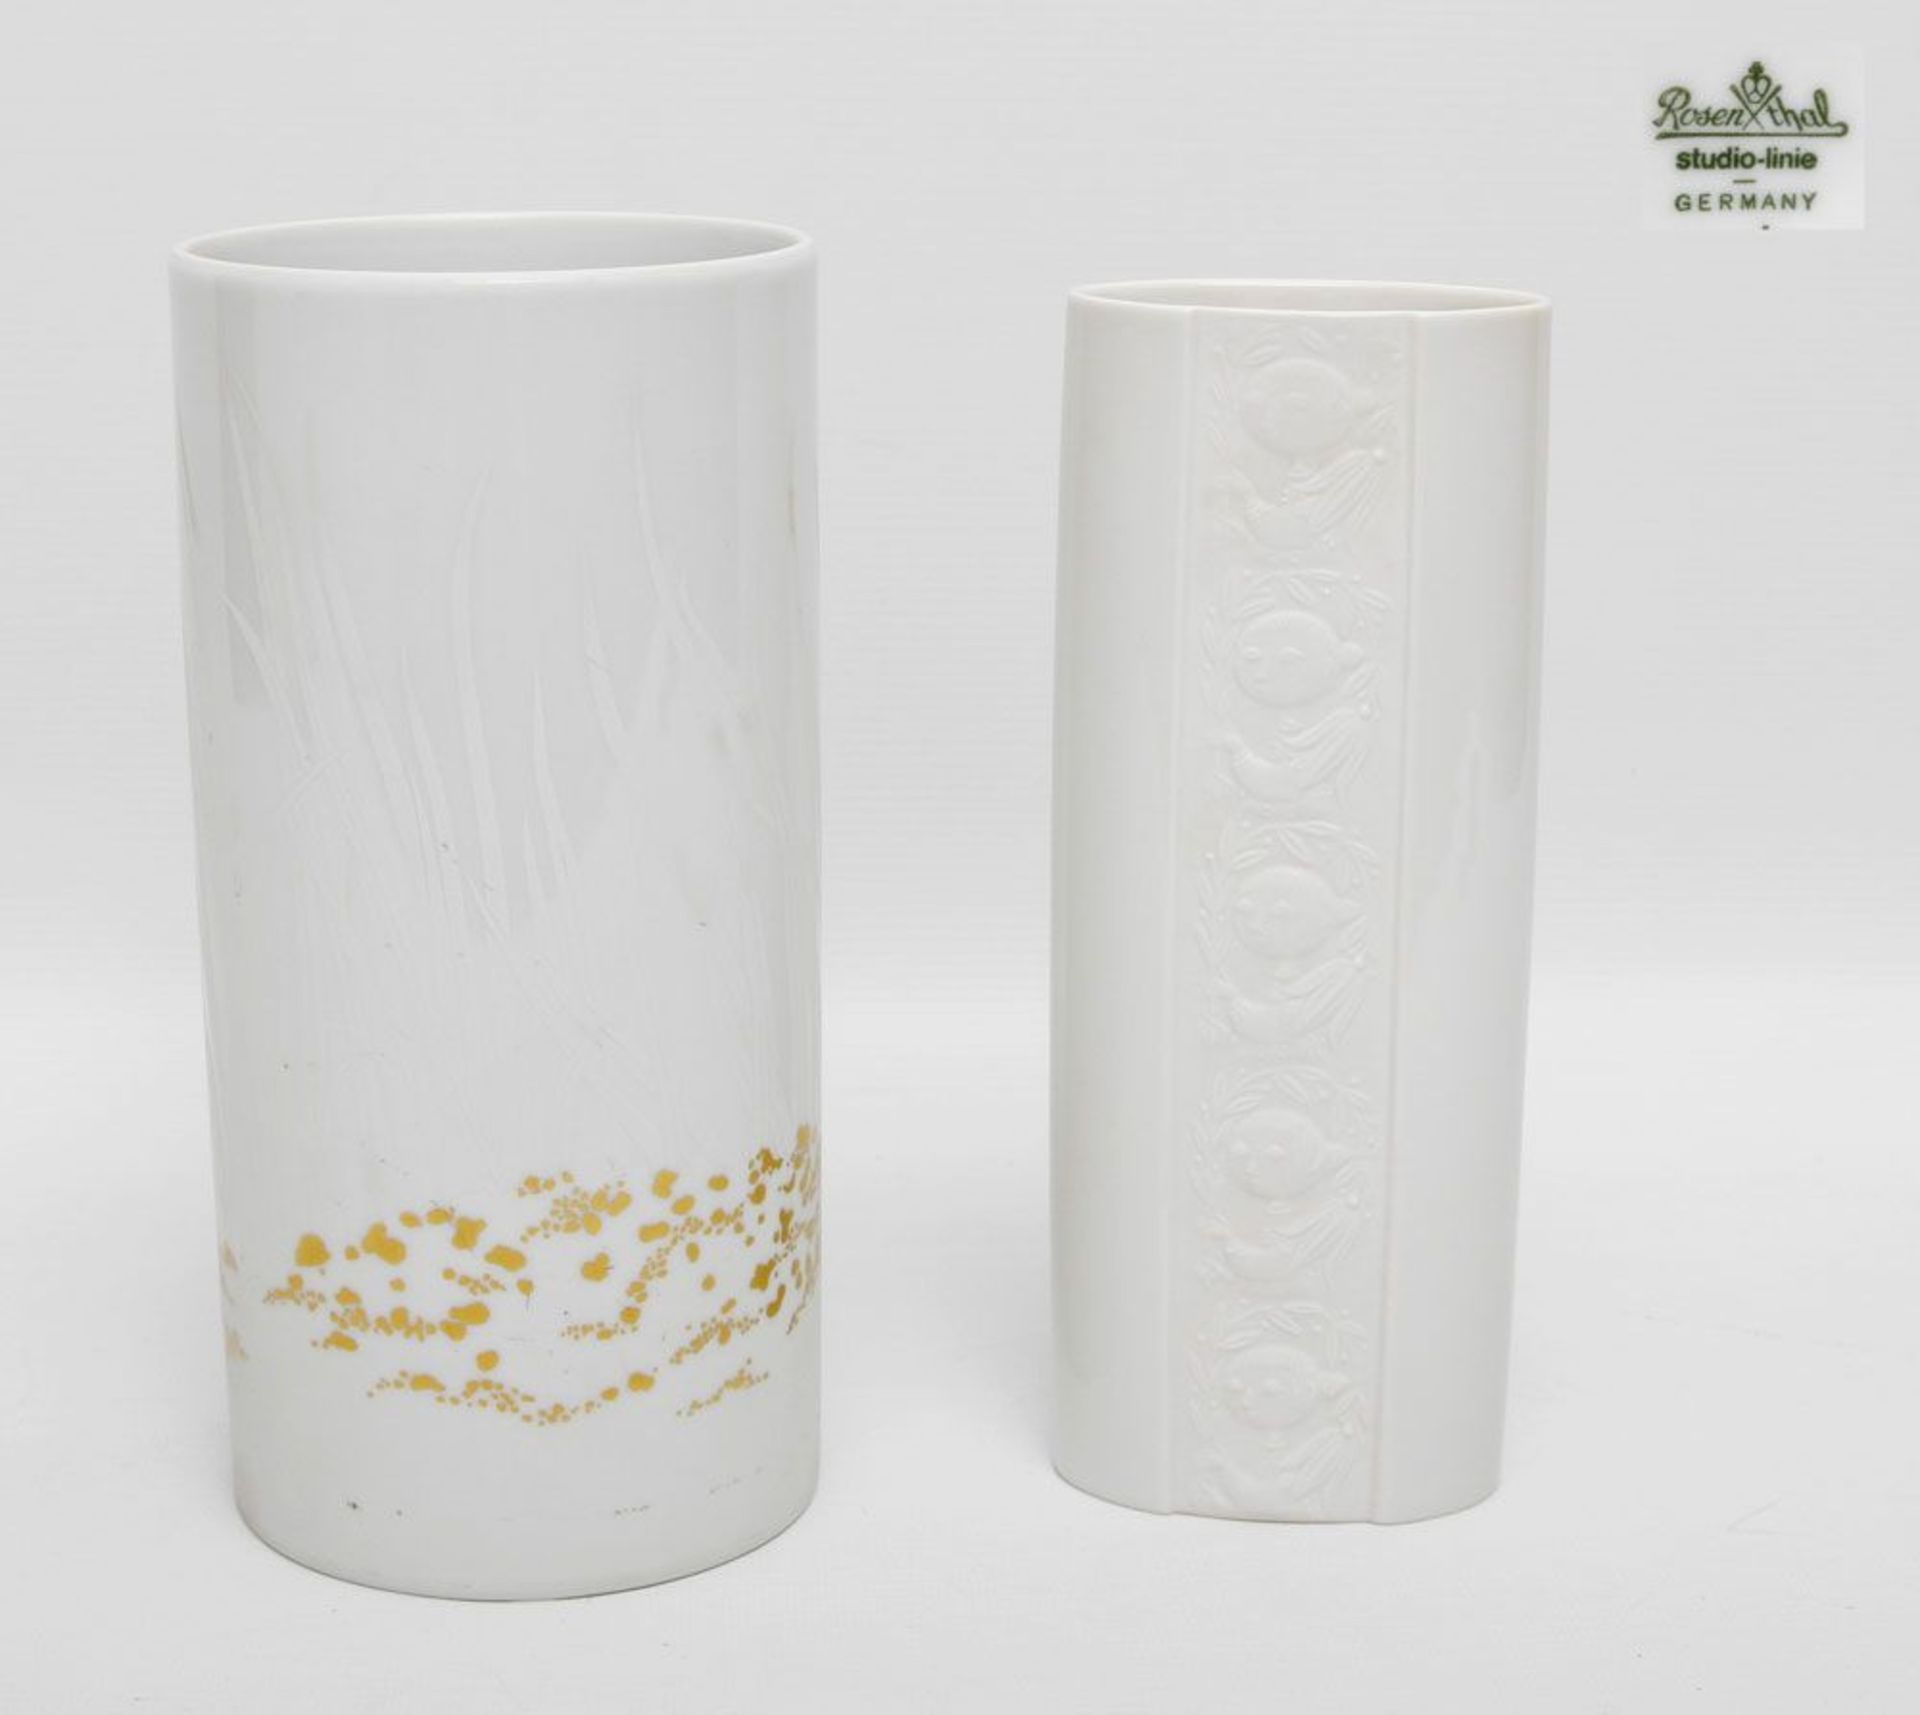 ROSENTHAL Paar Vasen, 20. Jh., bestehend aus weißer Vase mit figuralem Dekor (Entwurf: Björn